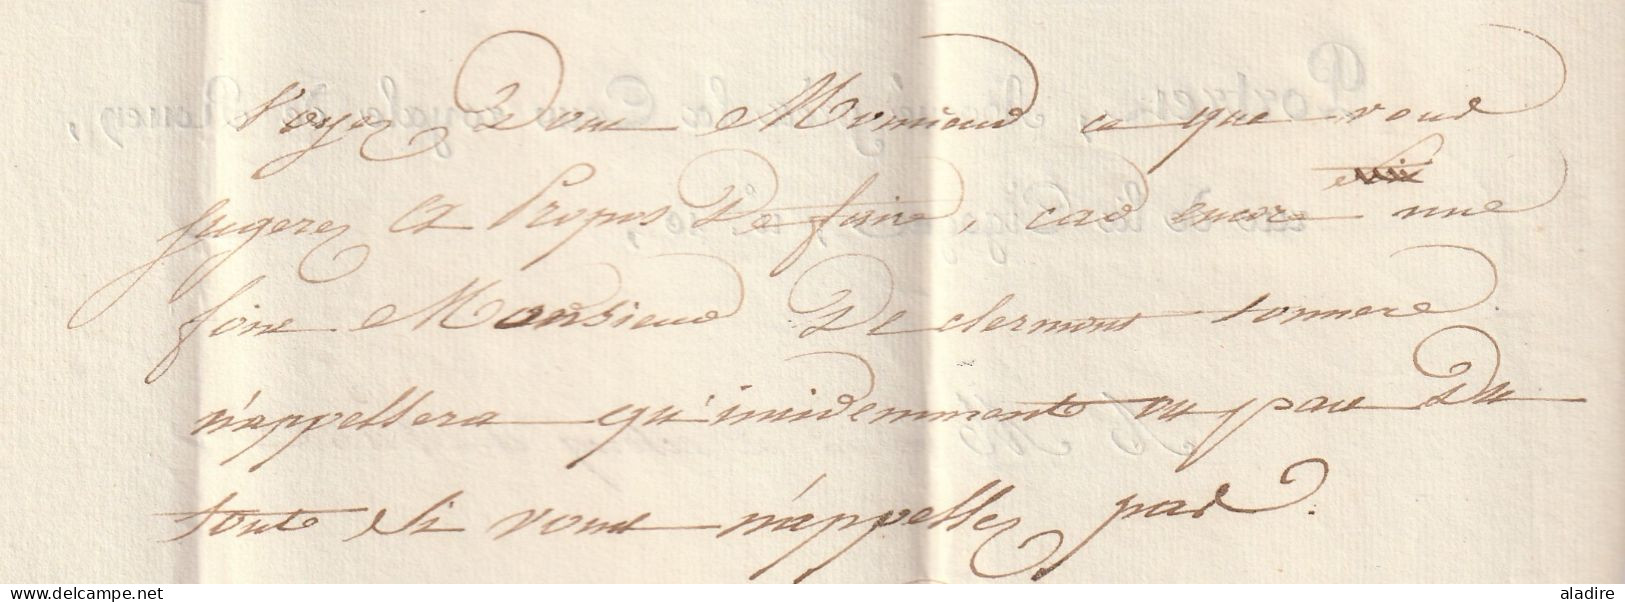 1826 - Marque postale 74 ROUEN sur lettre pliée de 2 pages vers PARIS - taxe 4 - dateur en arrivée